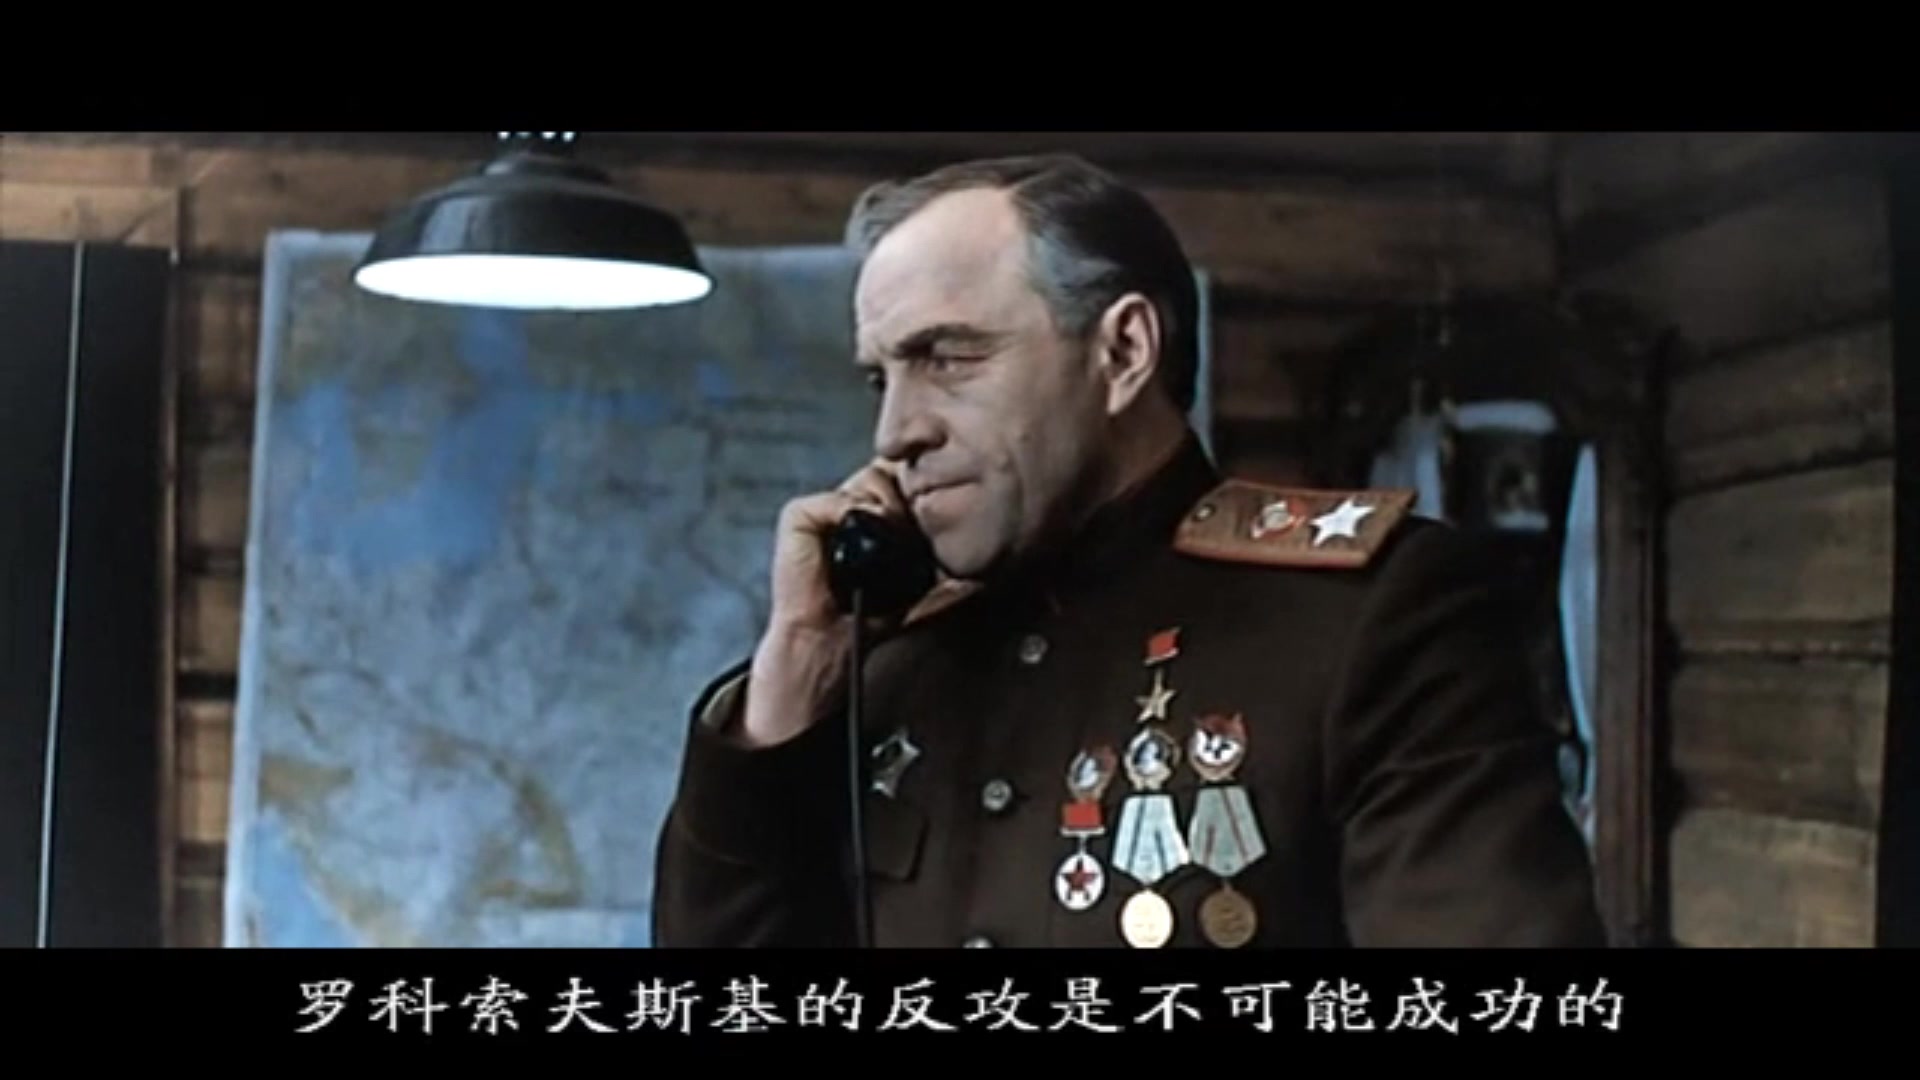 苏联电影解放朱可夫全部镜头cut演员是朱可夫本人当年钦定的